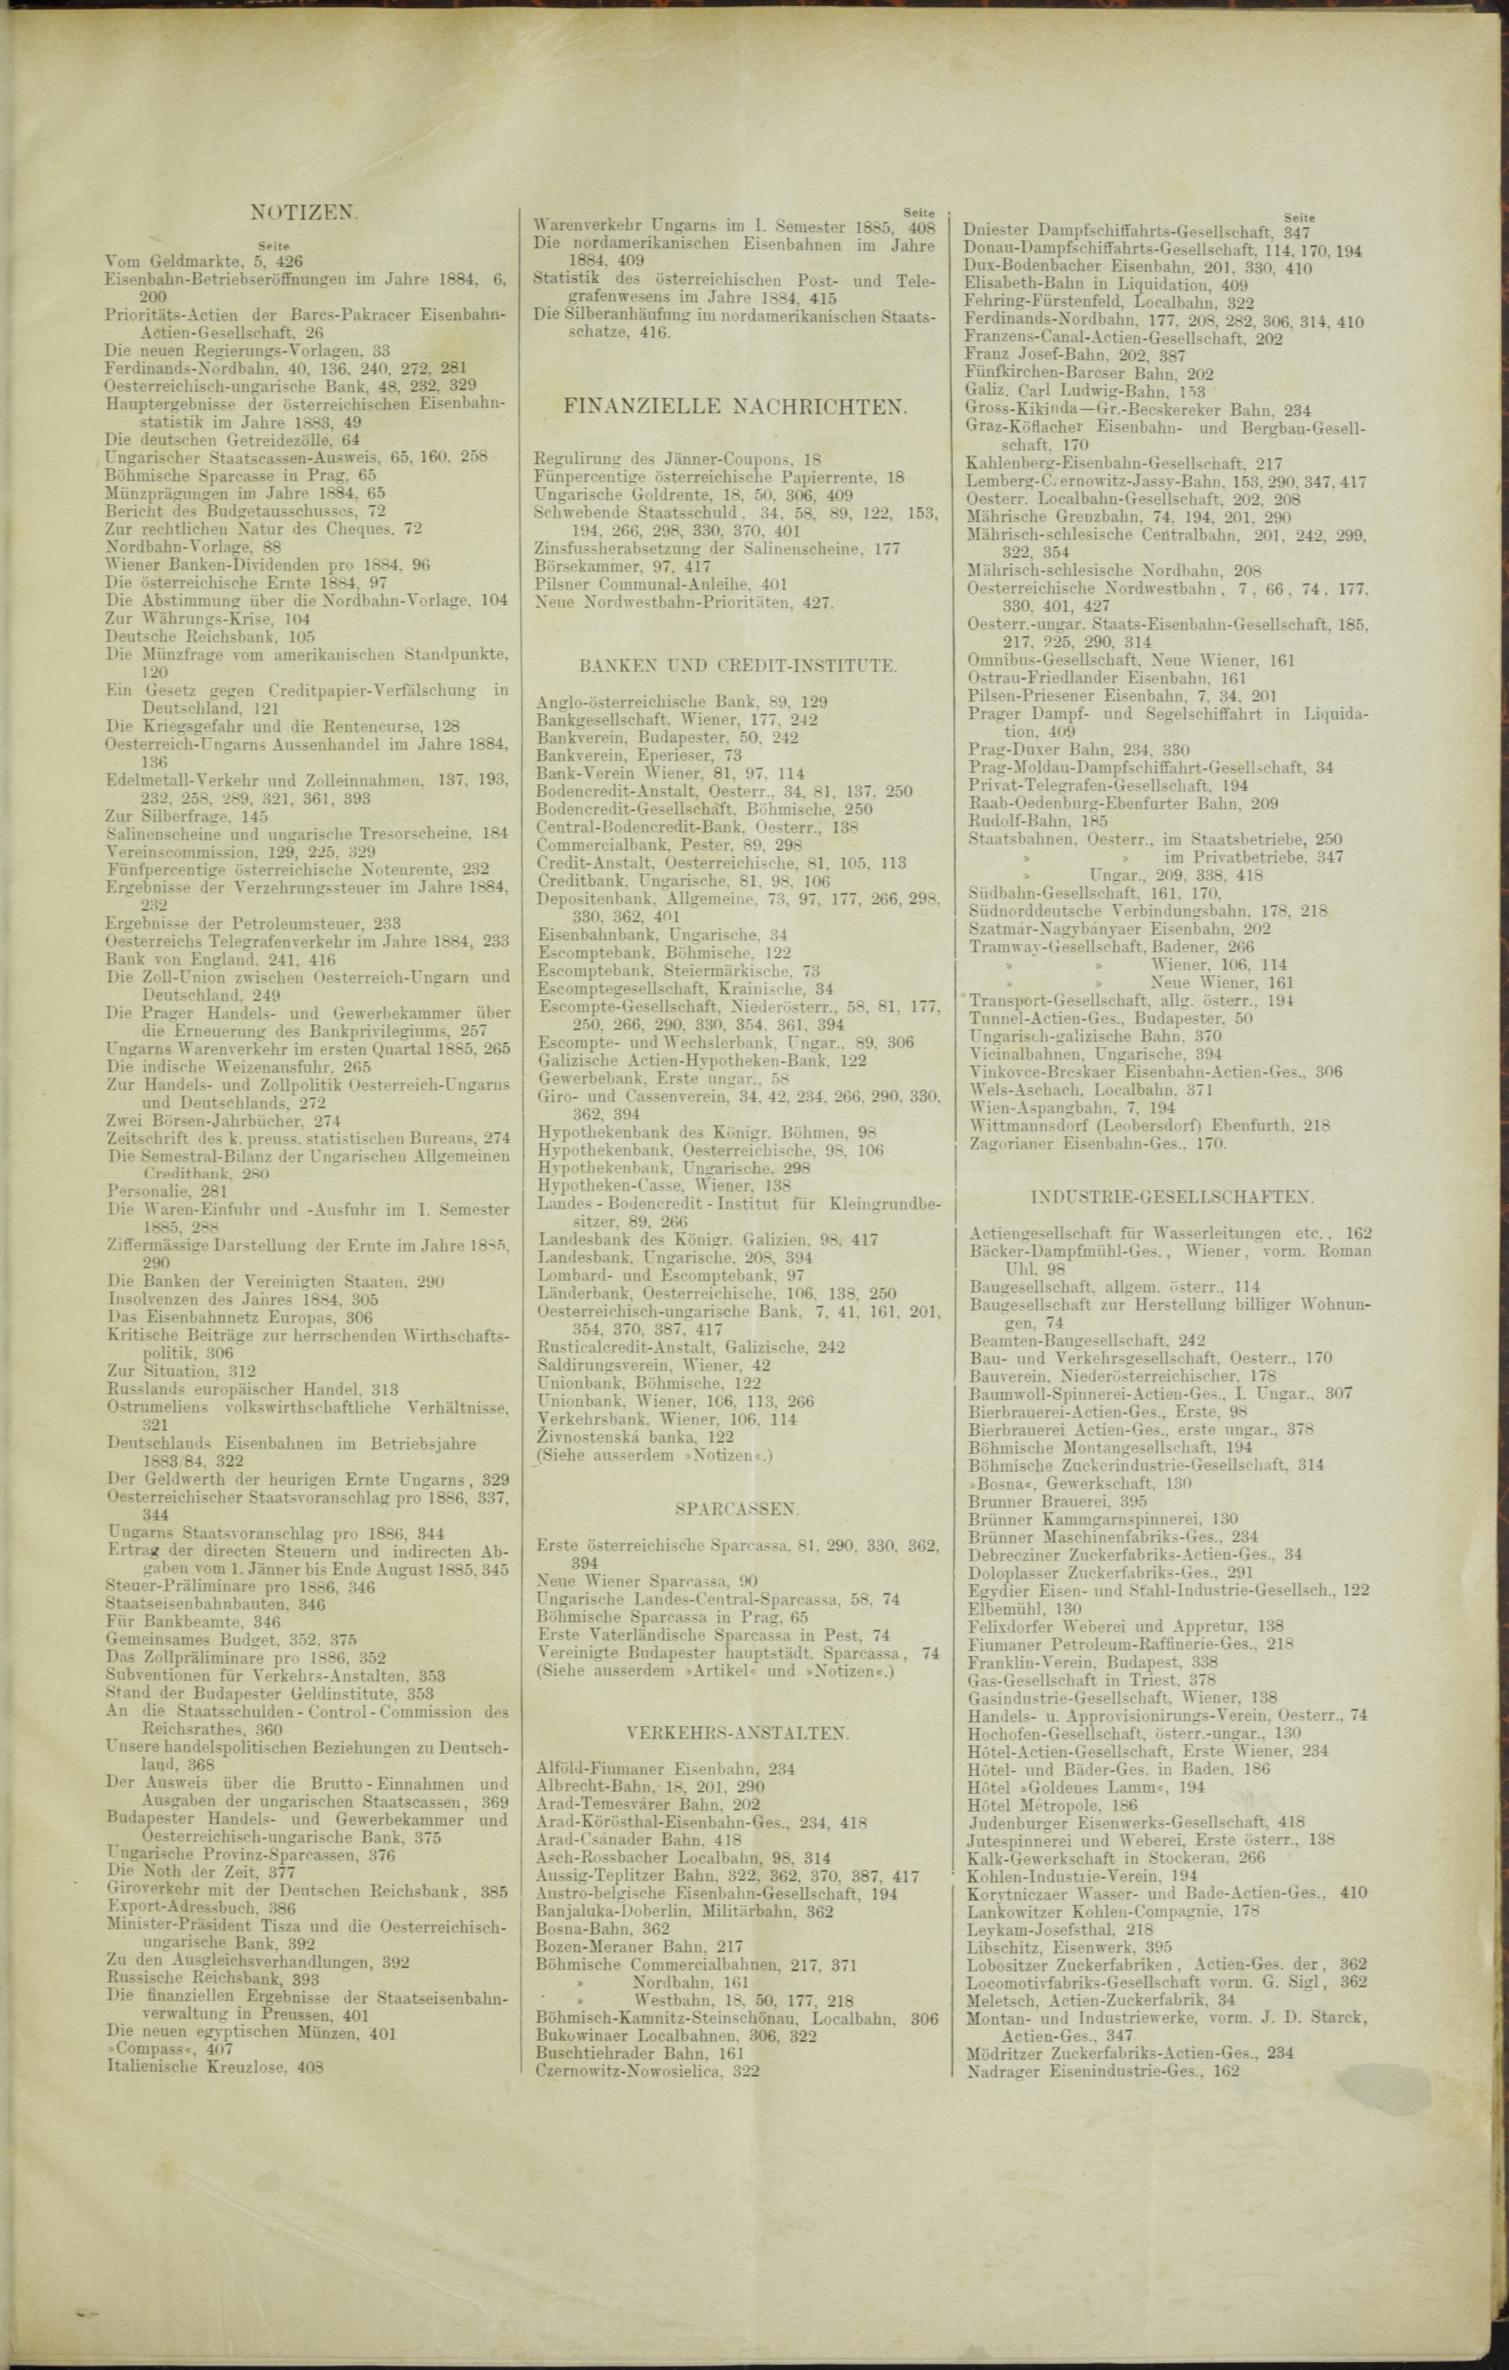 Der Tresor 27.08.1885 - Seite 11